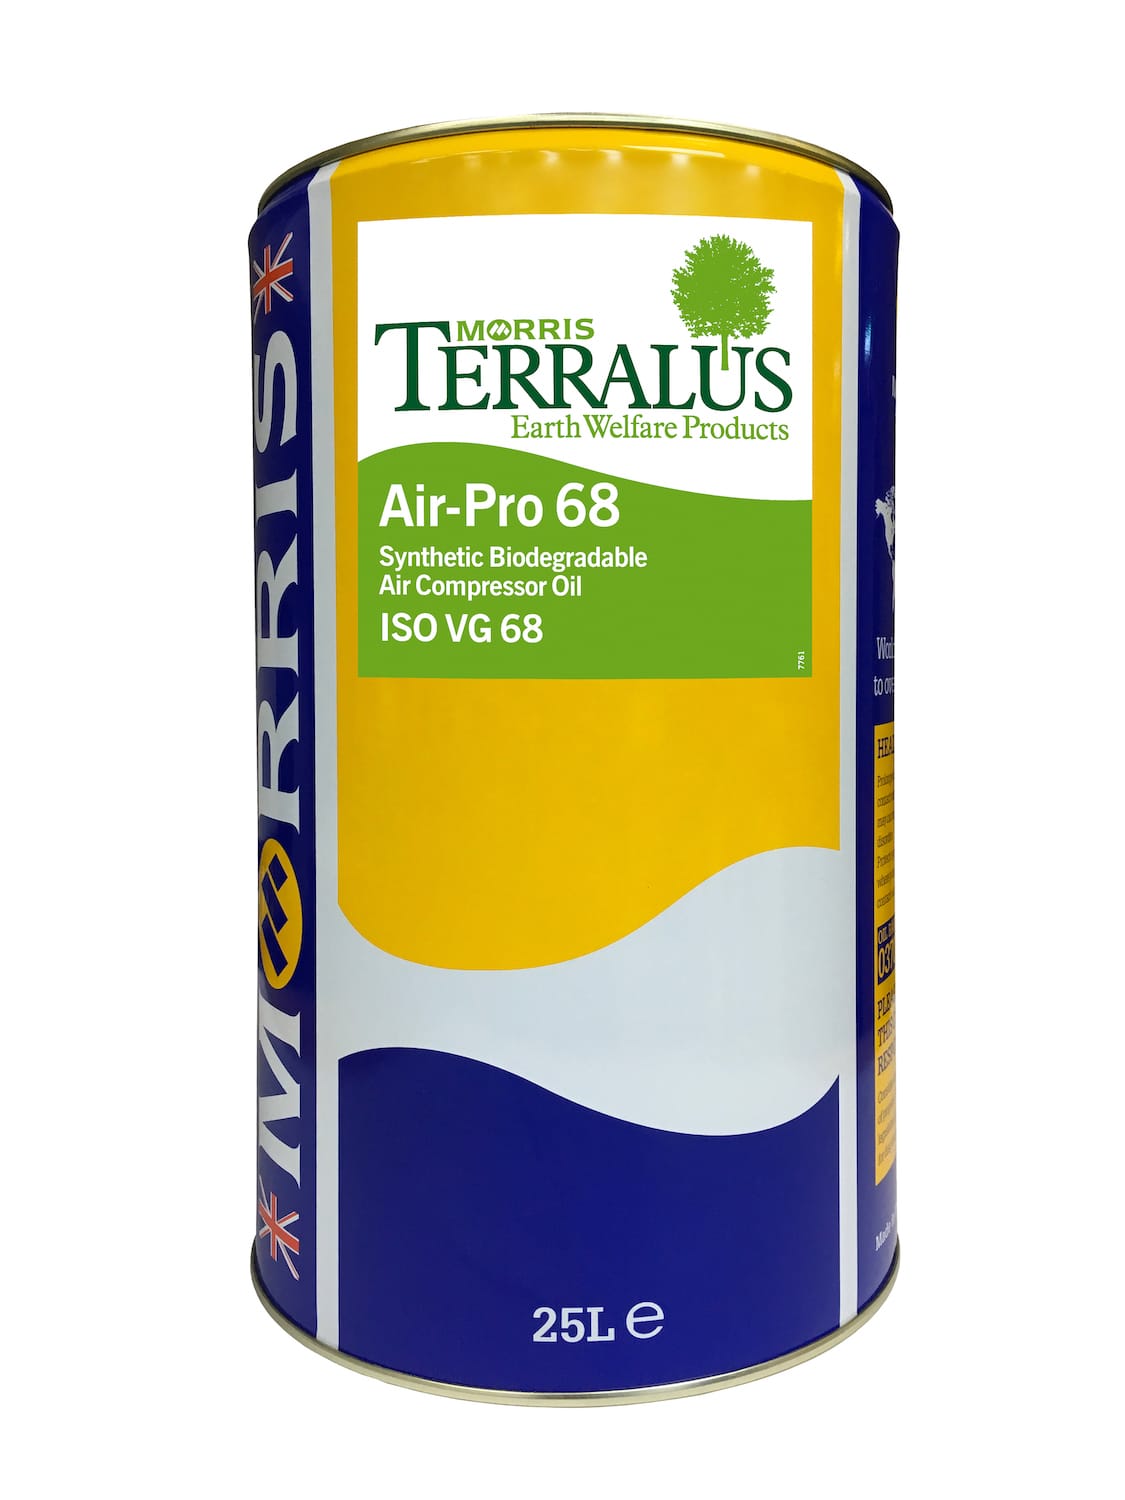 Terralus Air-Pro 68